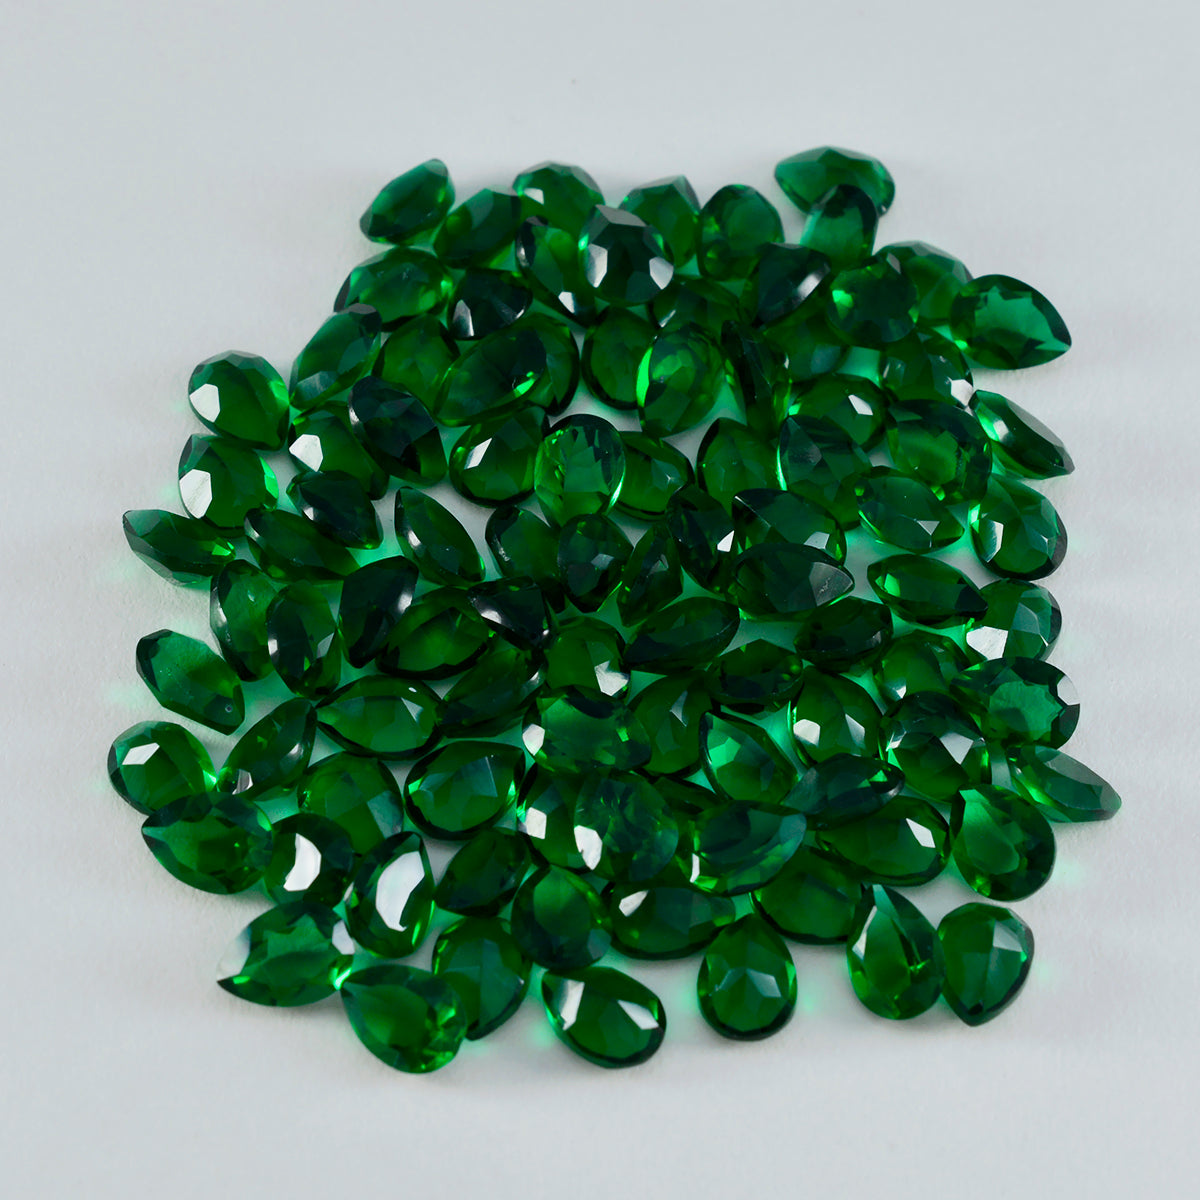 riyogems 1 шт., зеленый изумруд, граненый cz, 4x6 мм, грушевидная форма, красивый качественный свободный драгоценный камень